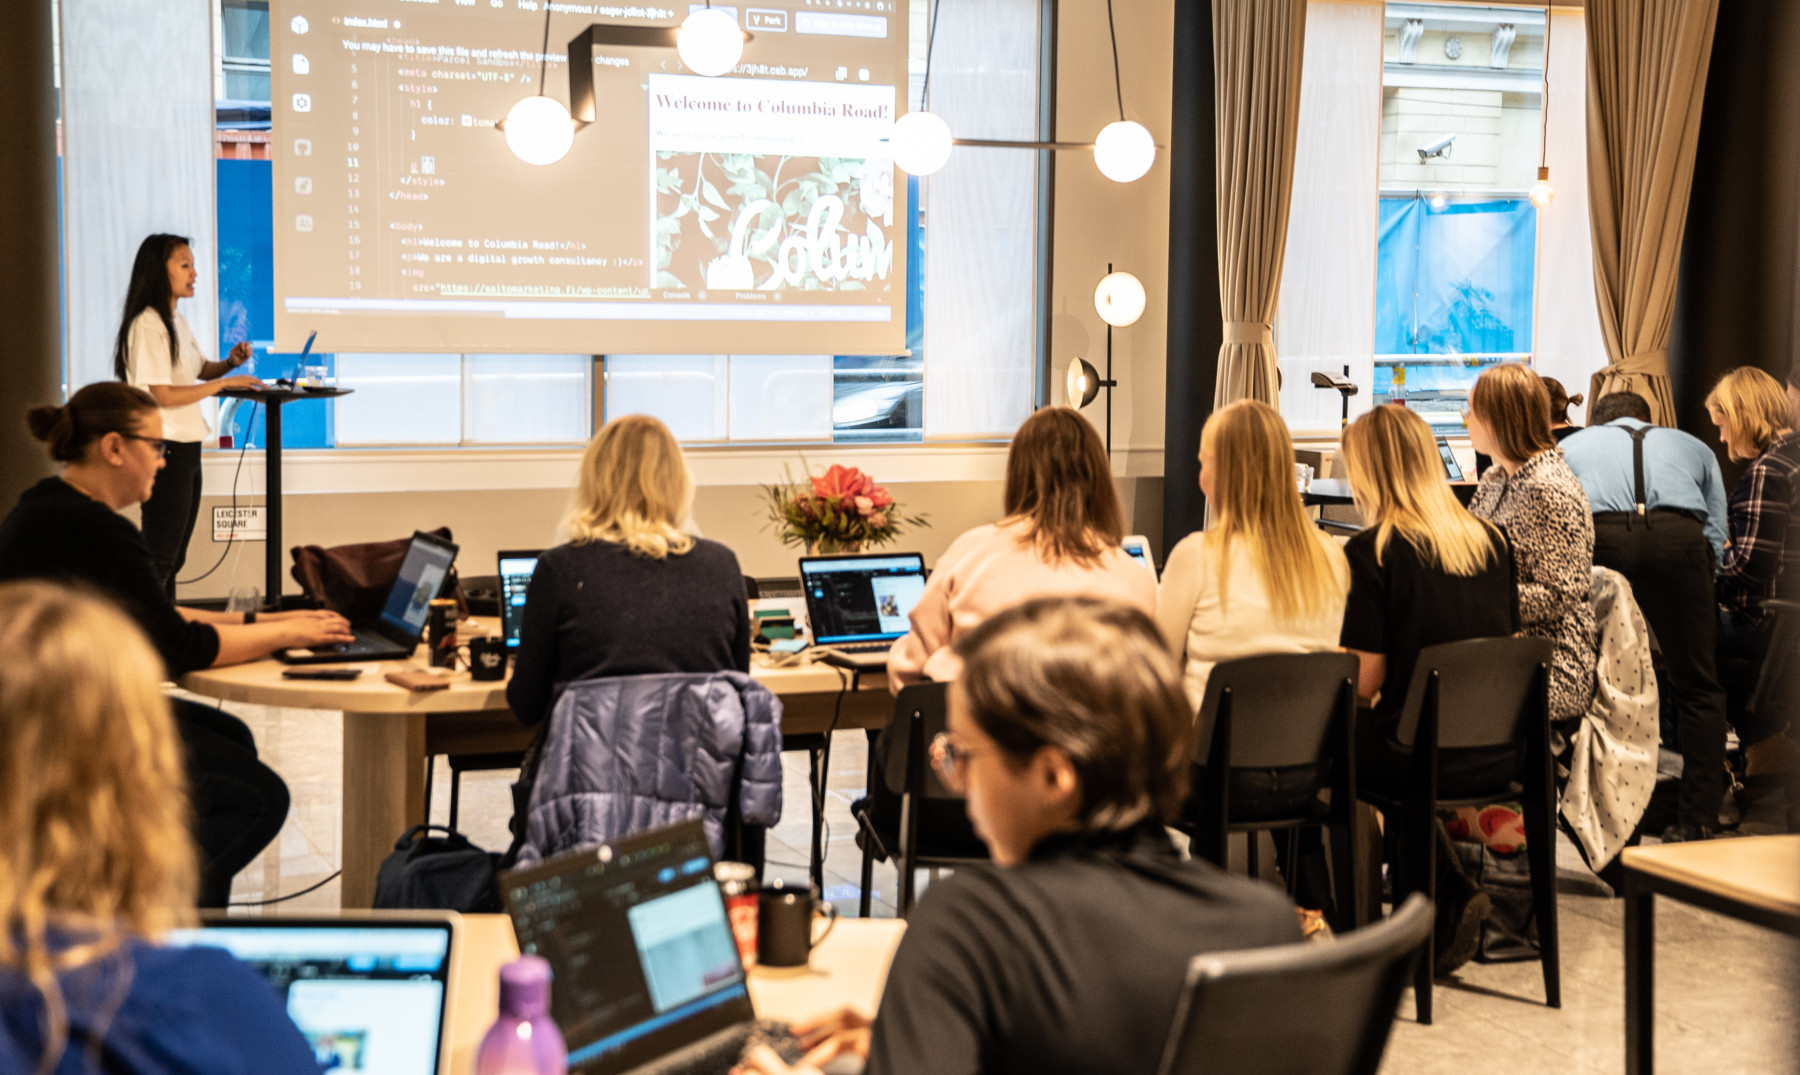 تشاهد مجموعة من النساء نساء أخريات يقدمن عرضًا تقديميًا من خلال أجهزة كمبيوتر مفتوحة.